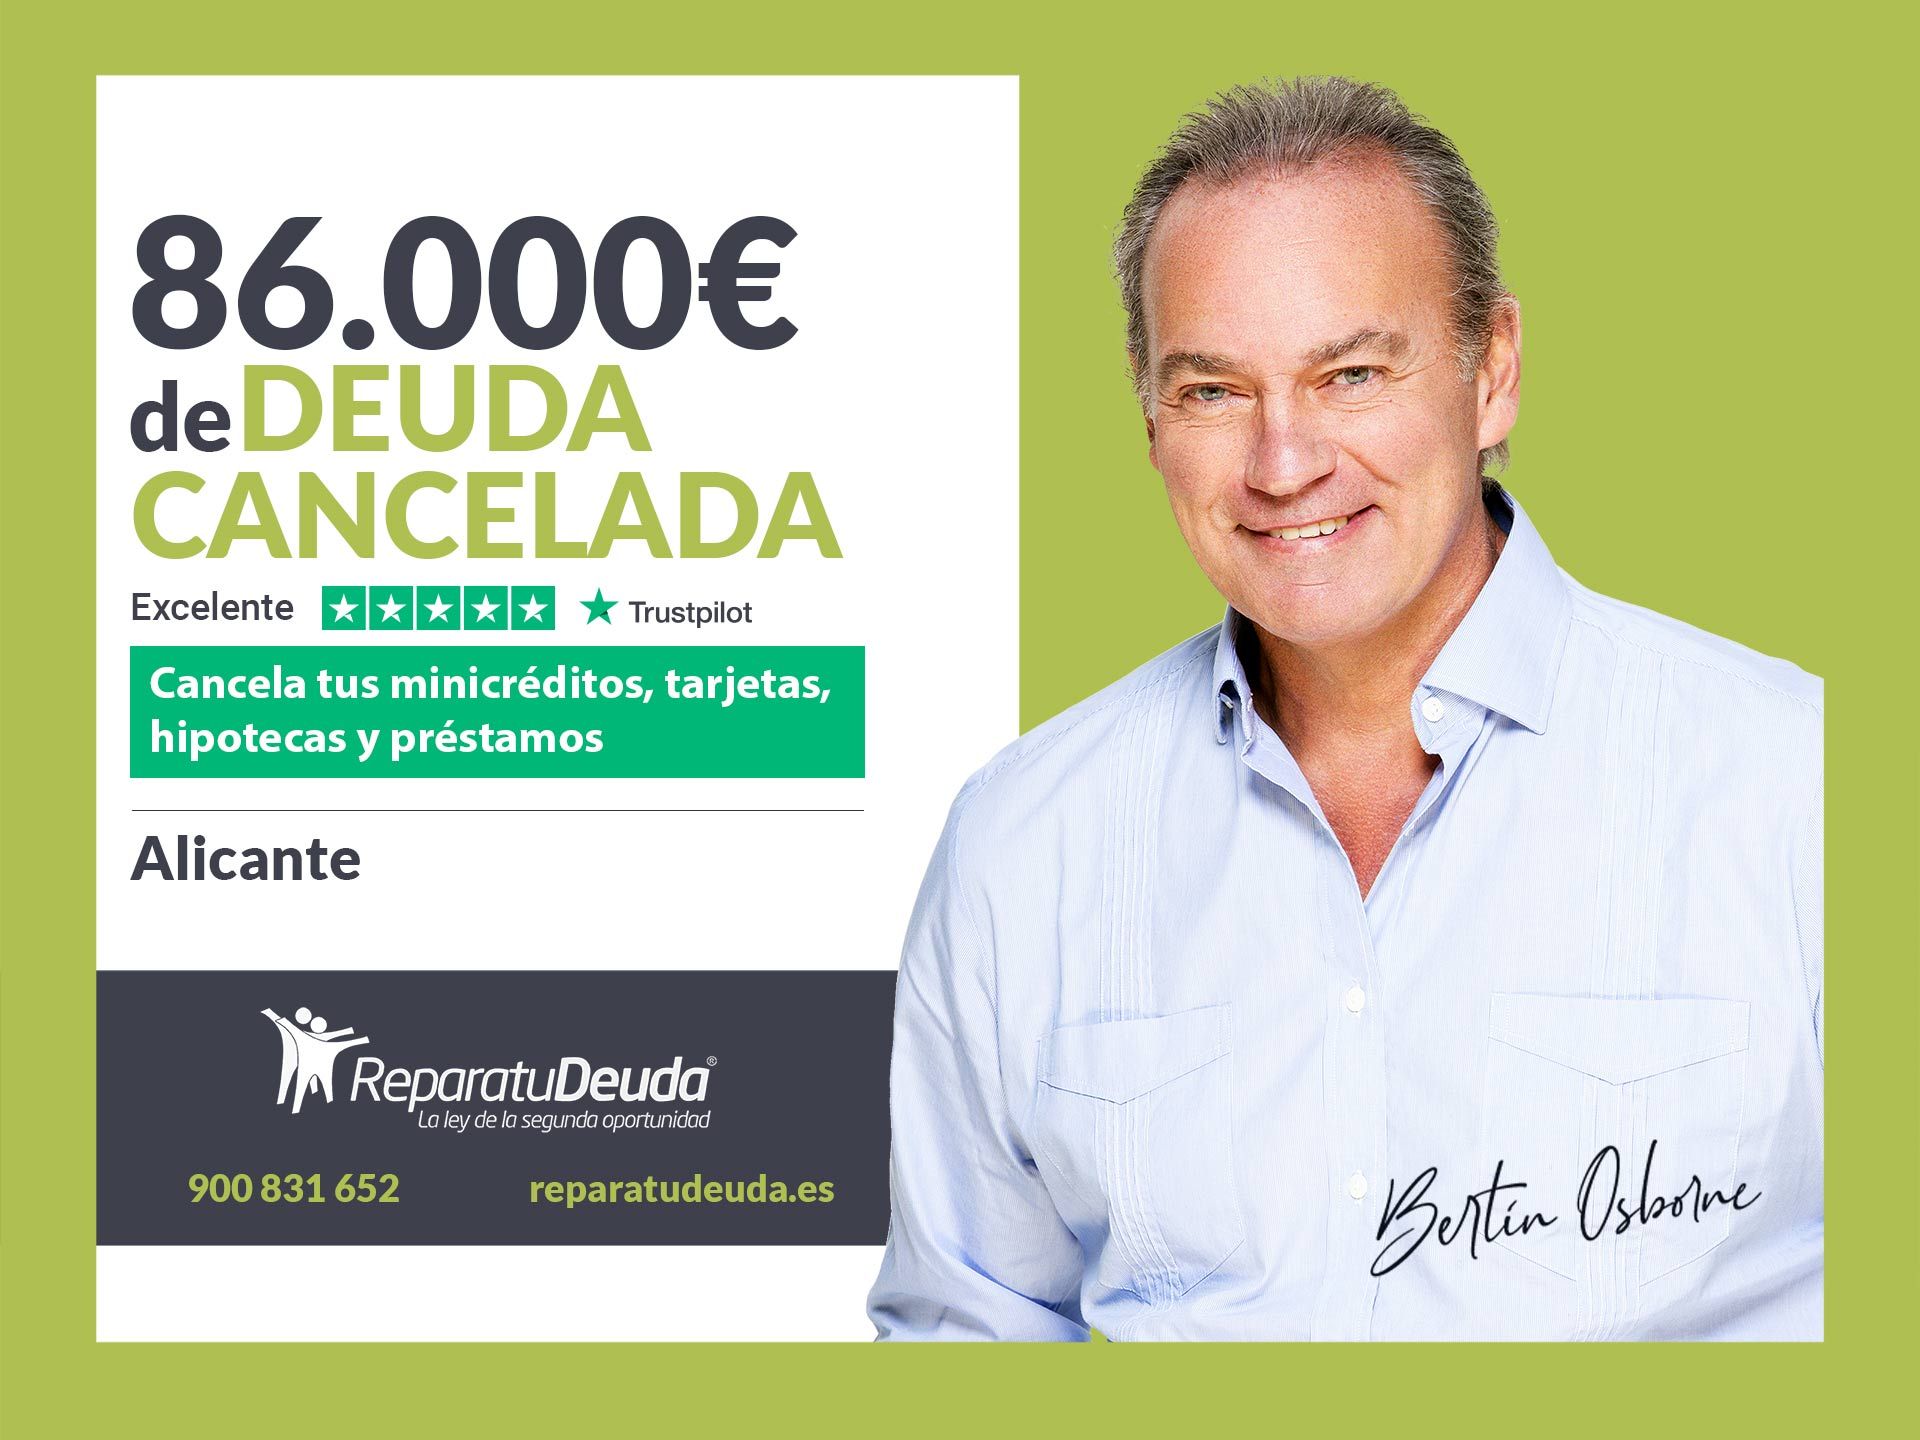 Repara tu Deuda Abogados cancela 86.000? en Alicante (C. Valenciana) con la Ley de Segunda Oportunidad